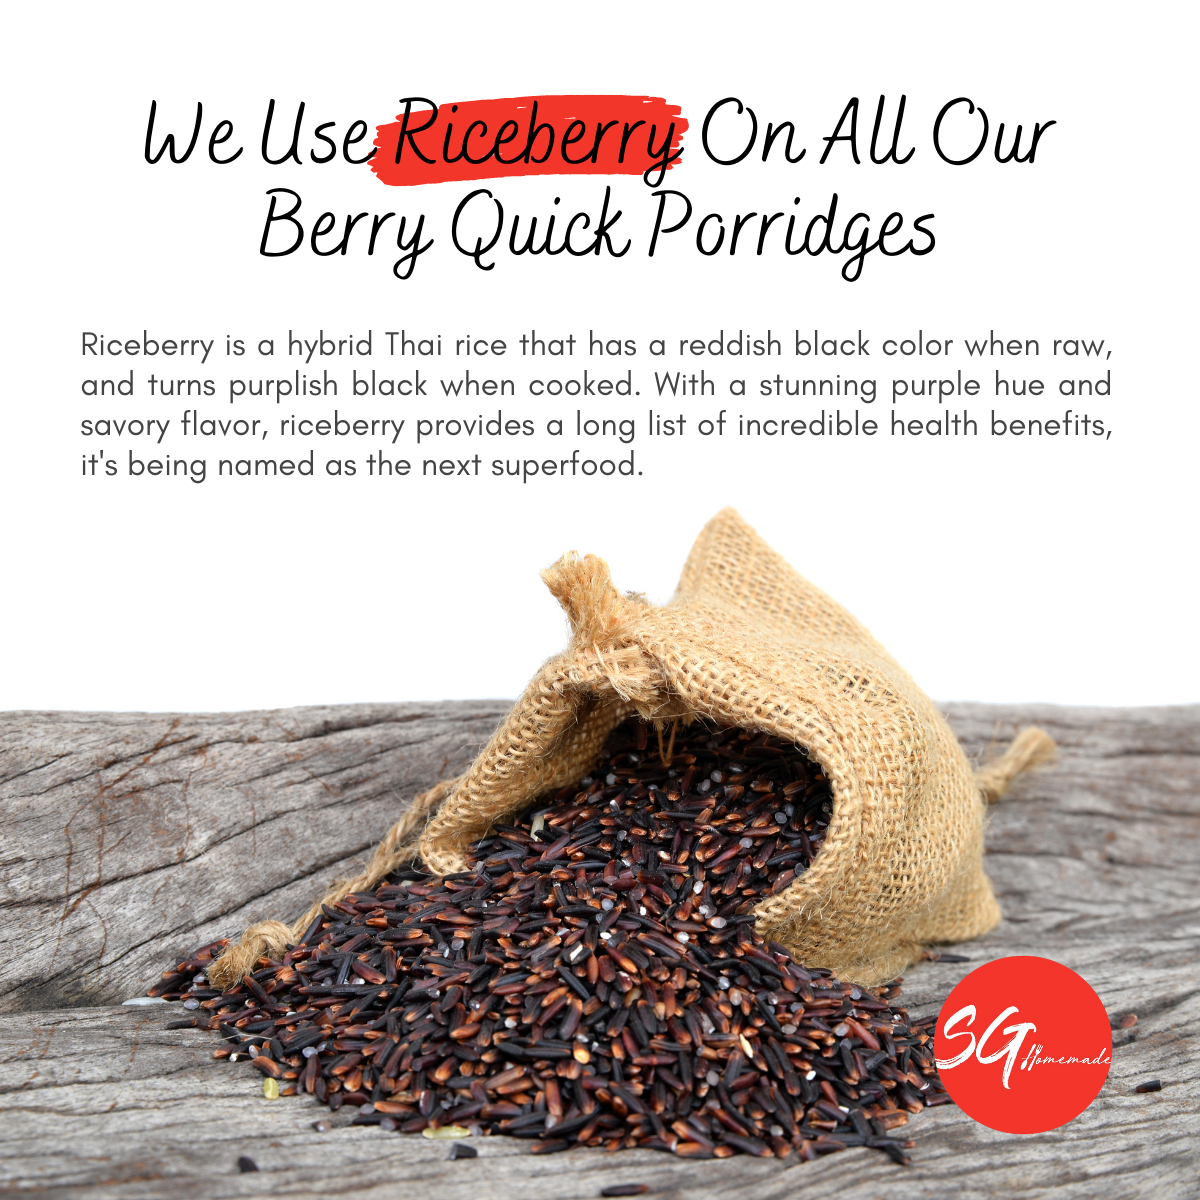 Berry Quick Porridge (ABC)